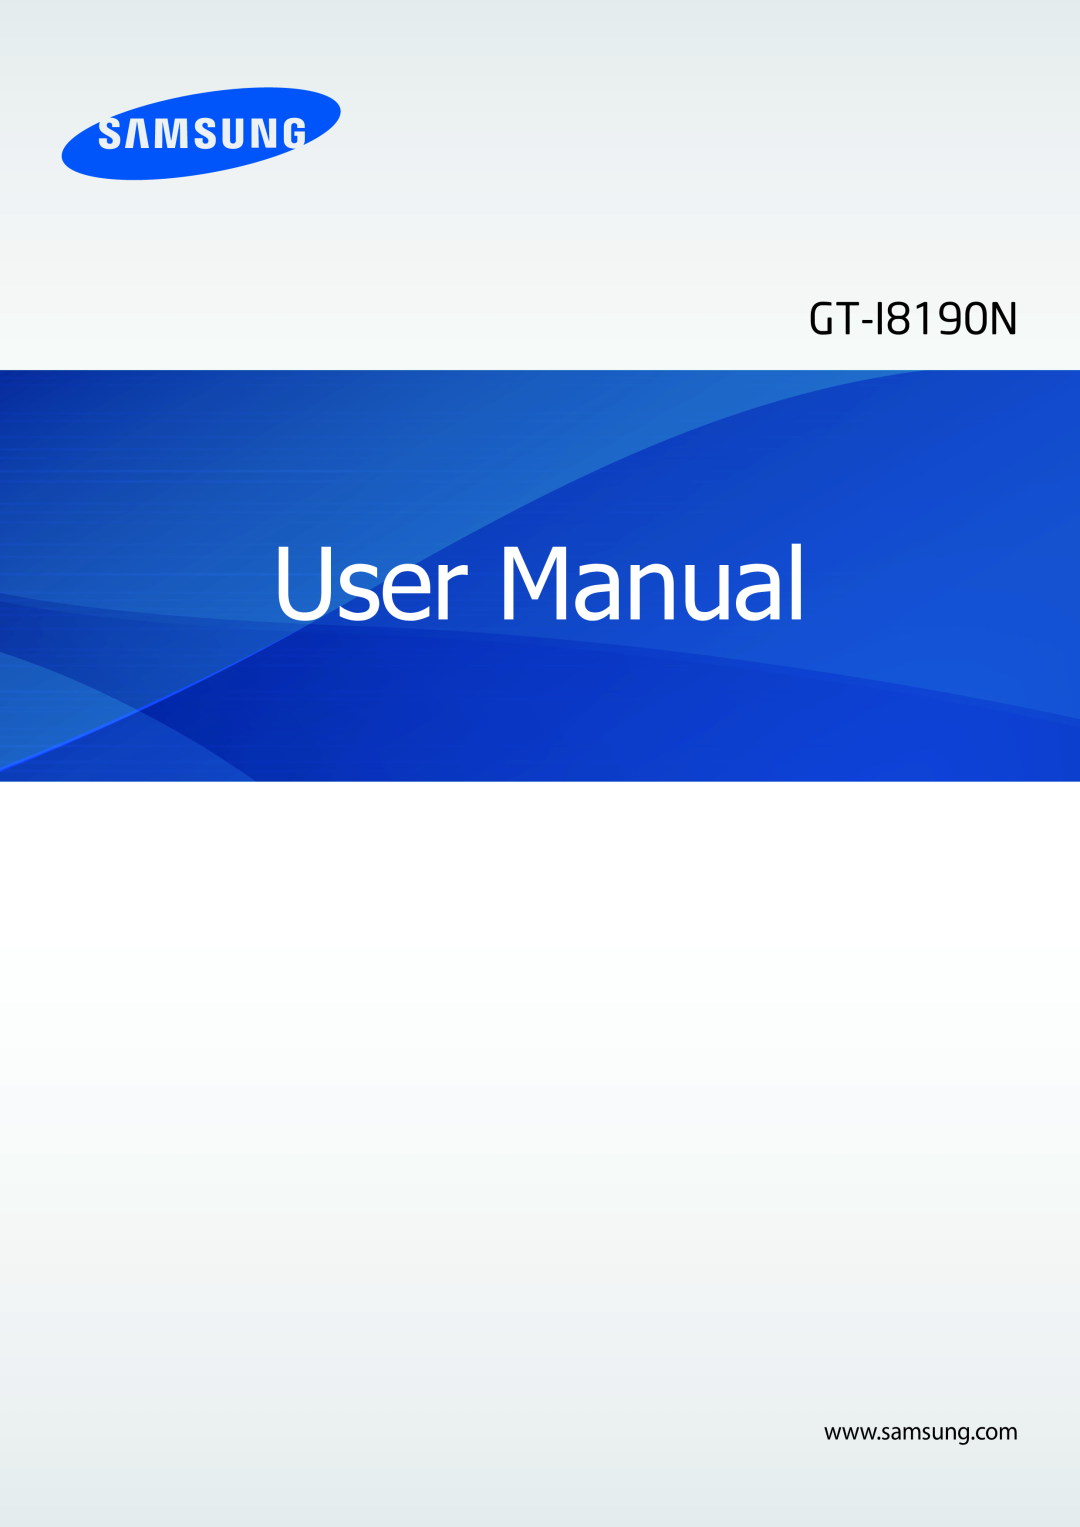 Samsung GT-I8190RWNDBT, GT-I8190RWNDTM, GT-I8190MBNTPL, GT-I8190TANIDE, GT-I8190MBNDBT manual User Manual, GT-I8190N 